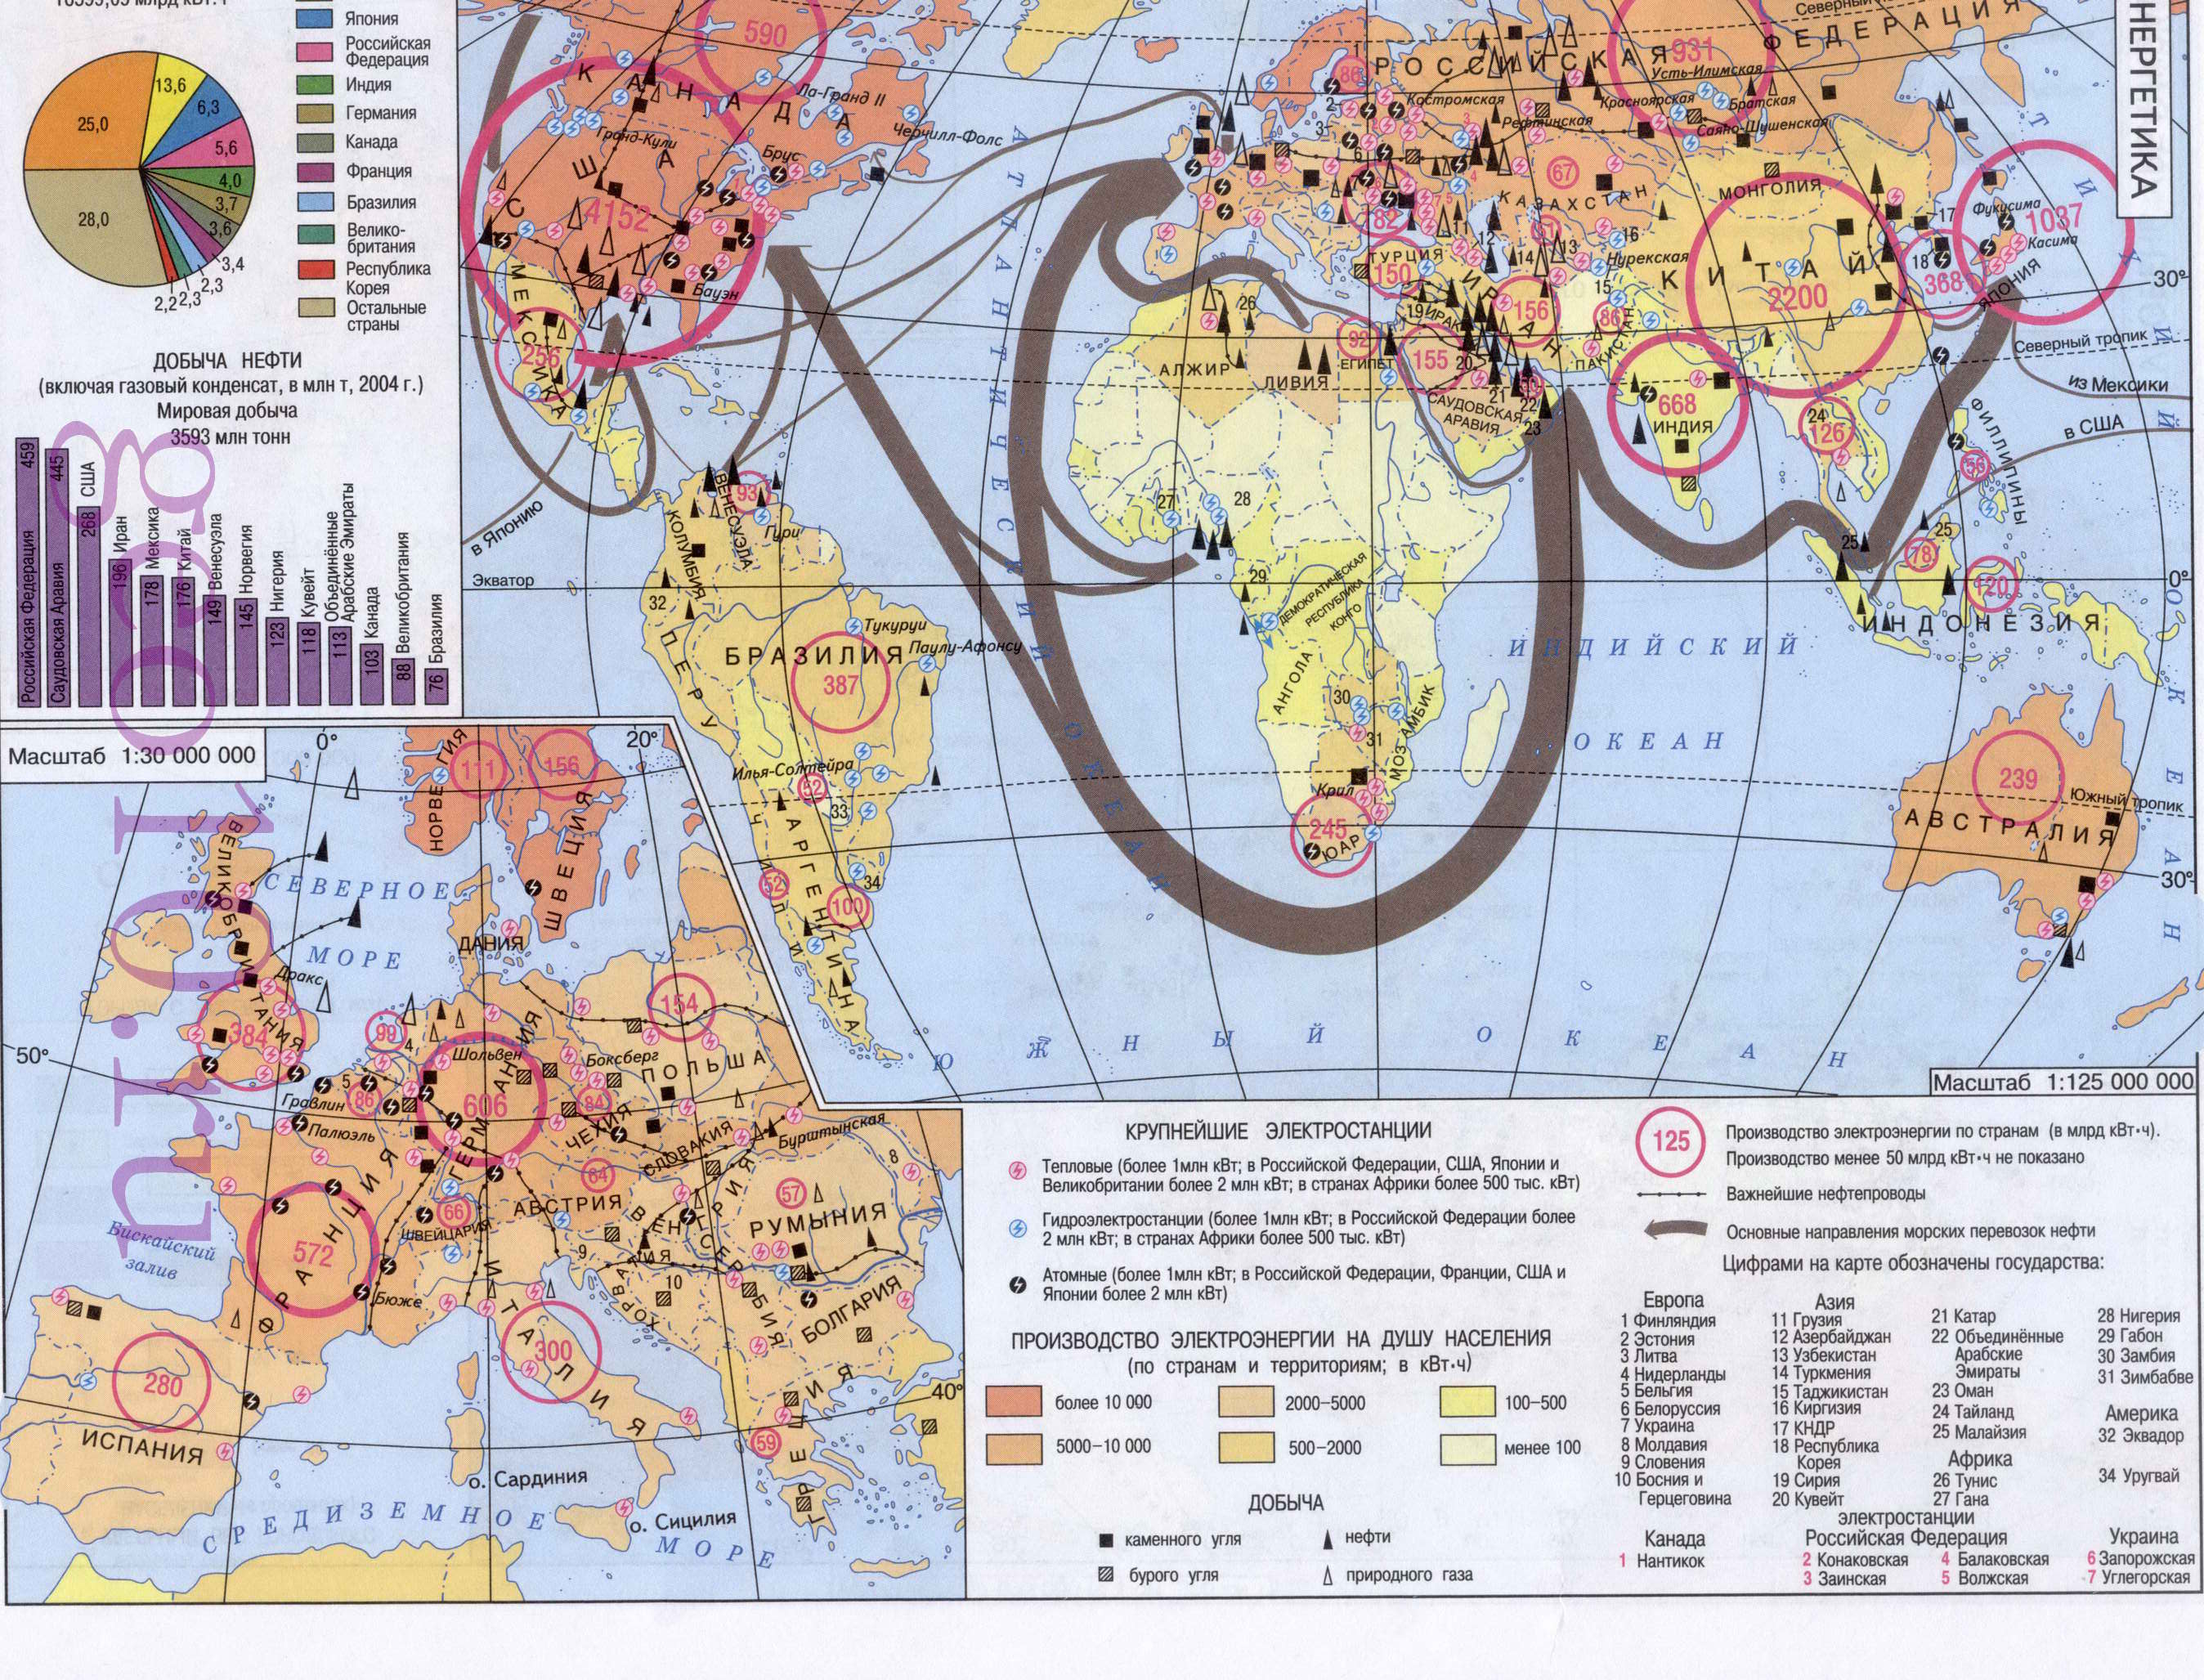 Энергетика мира. Карта мировой энергетики. Мировая добыча нефти и выработки электроэнергии, A0 - 